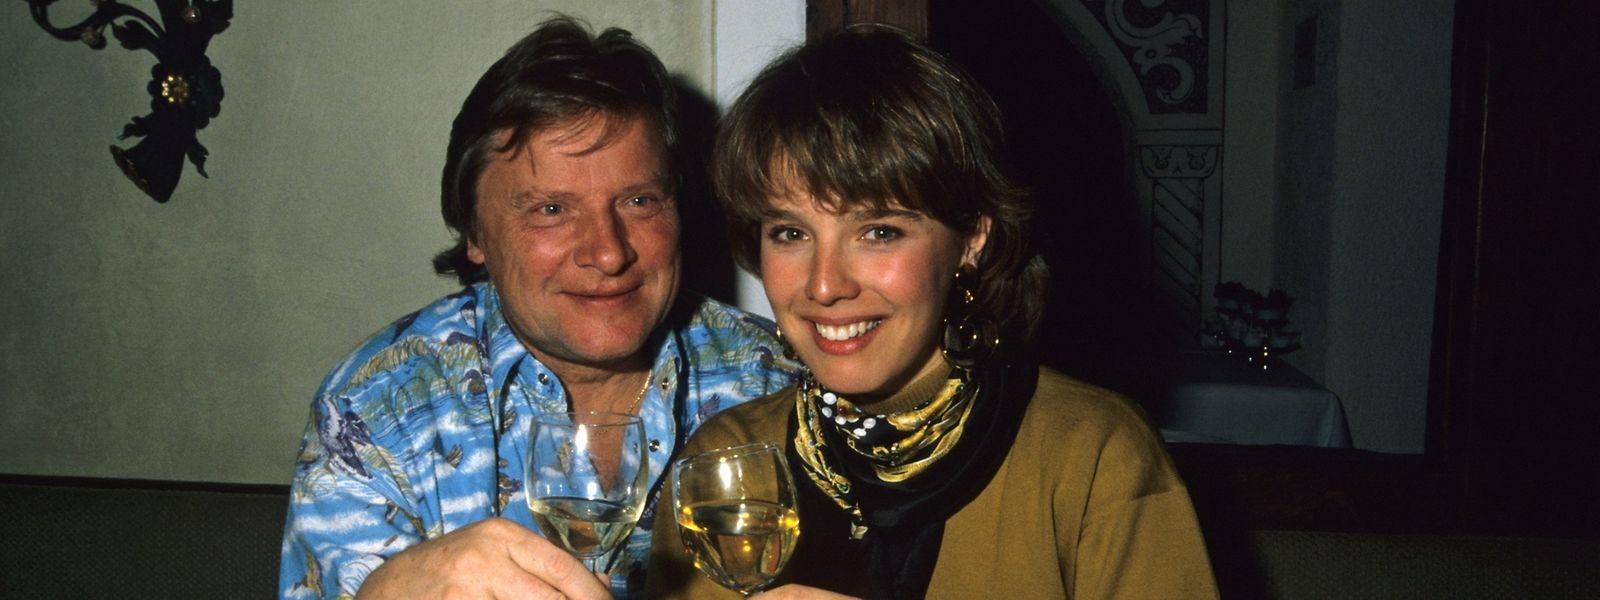 Désirée Nosbusch im April 1983 mit ihrem damaligen Lebensgefährten Georg Bossert.